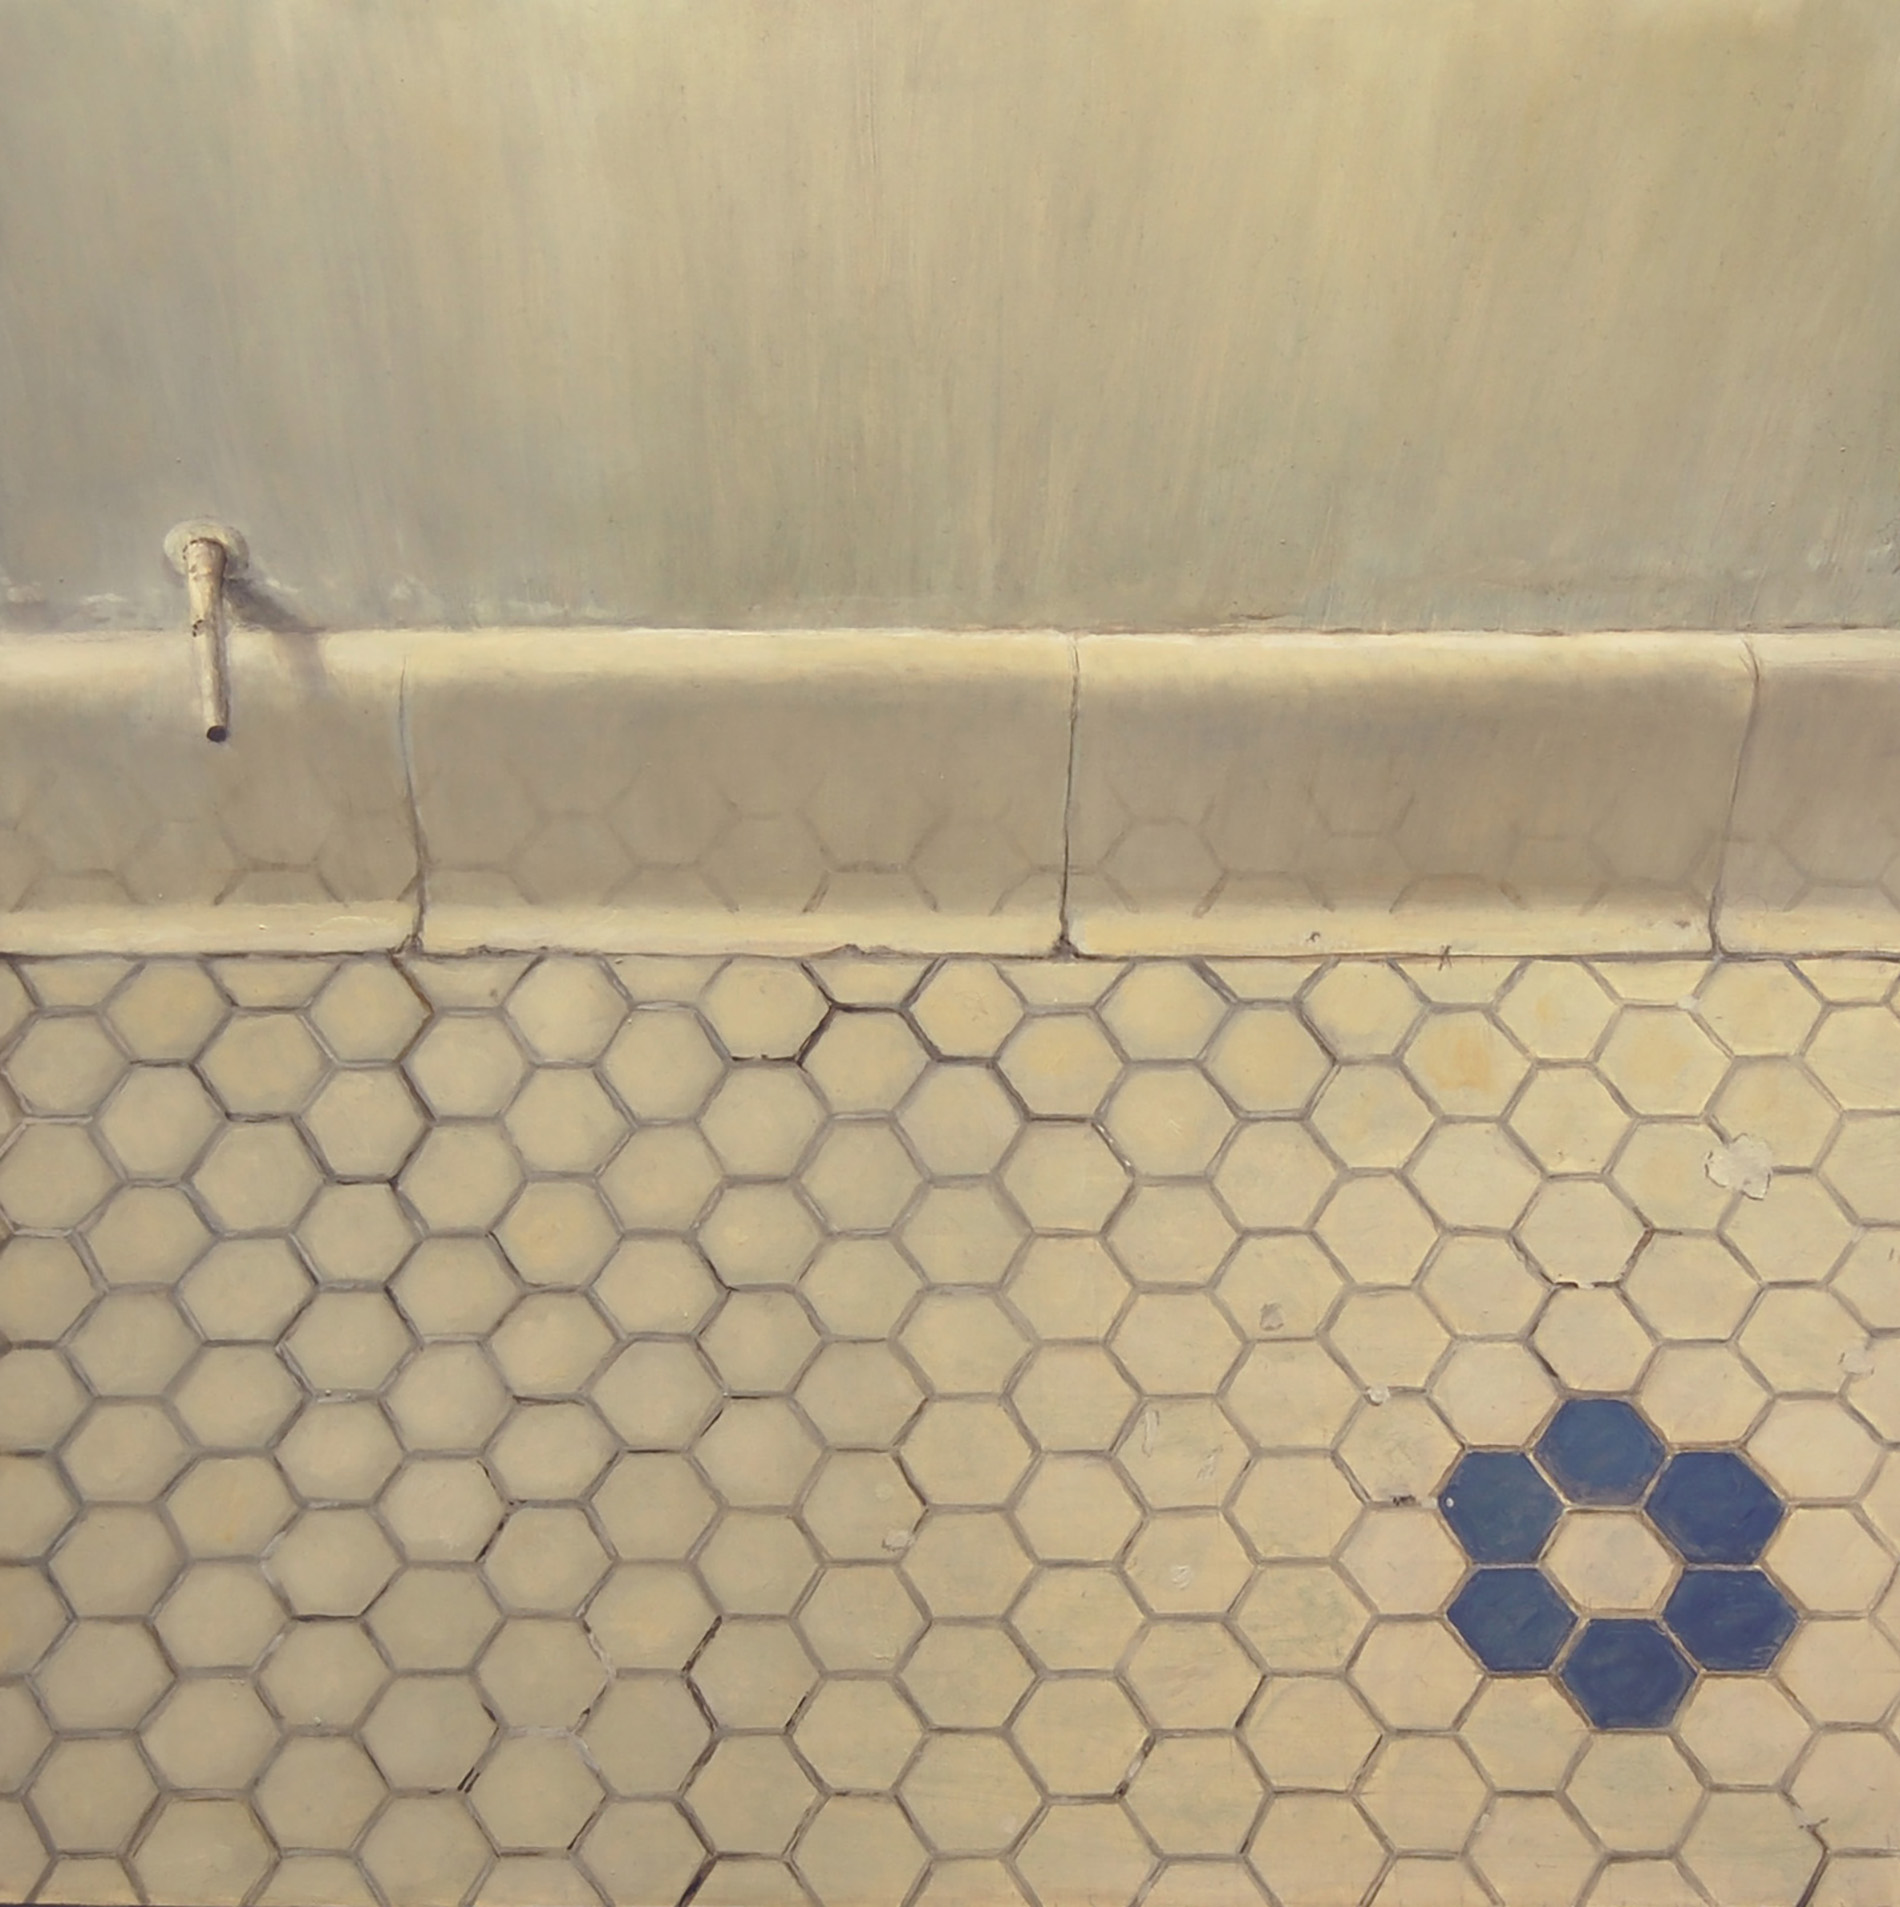   Bathroom Floor Tiles   2011  Oil on canvas  14 x 14 inches       